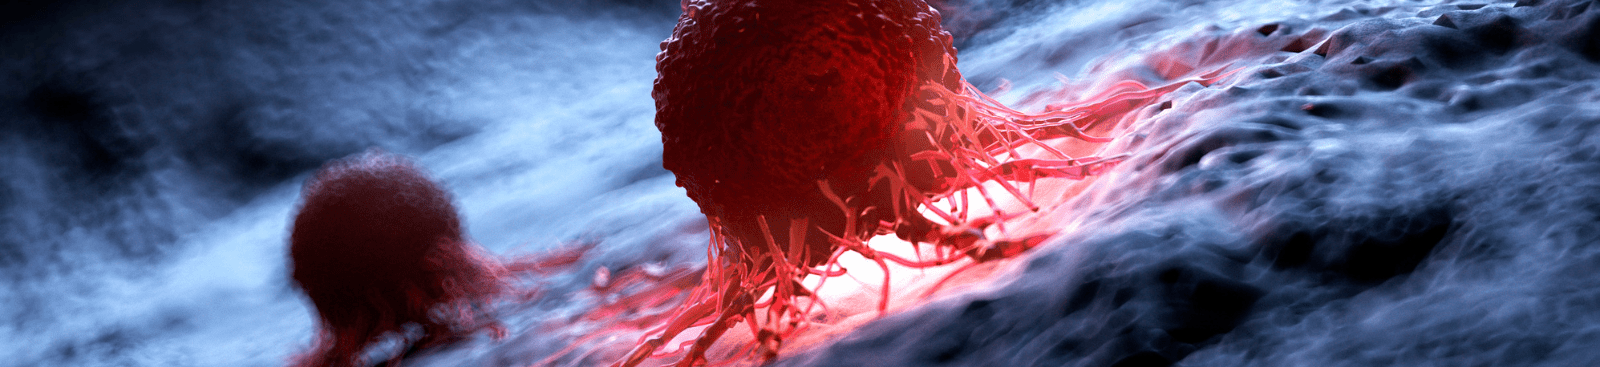 ¿Qué hace que unas células hagan metástasis en cáncer y otras no?...